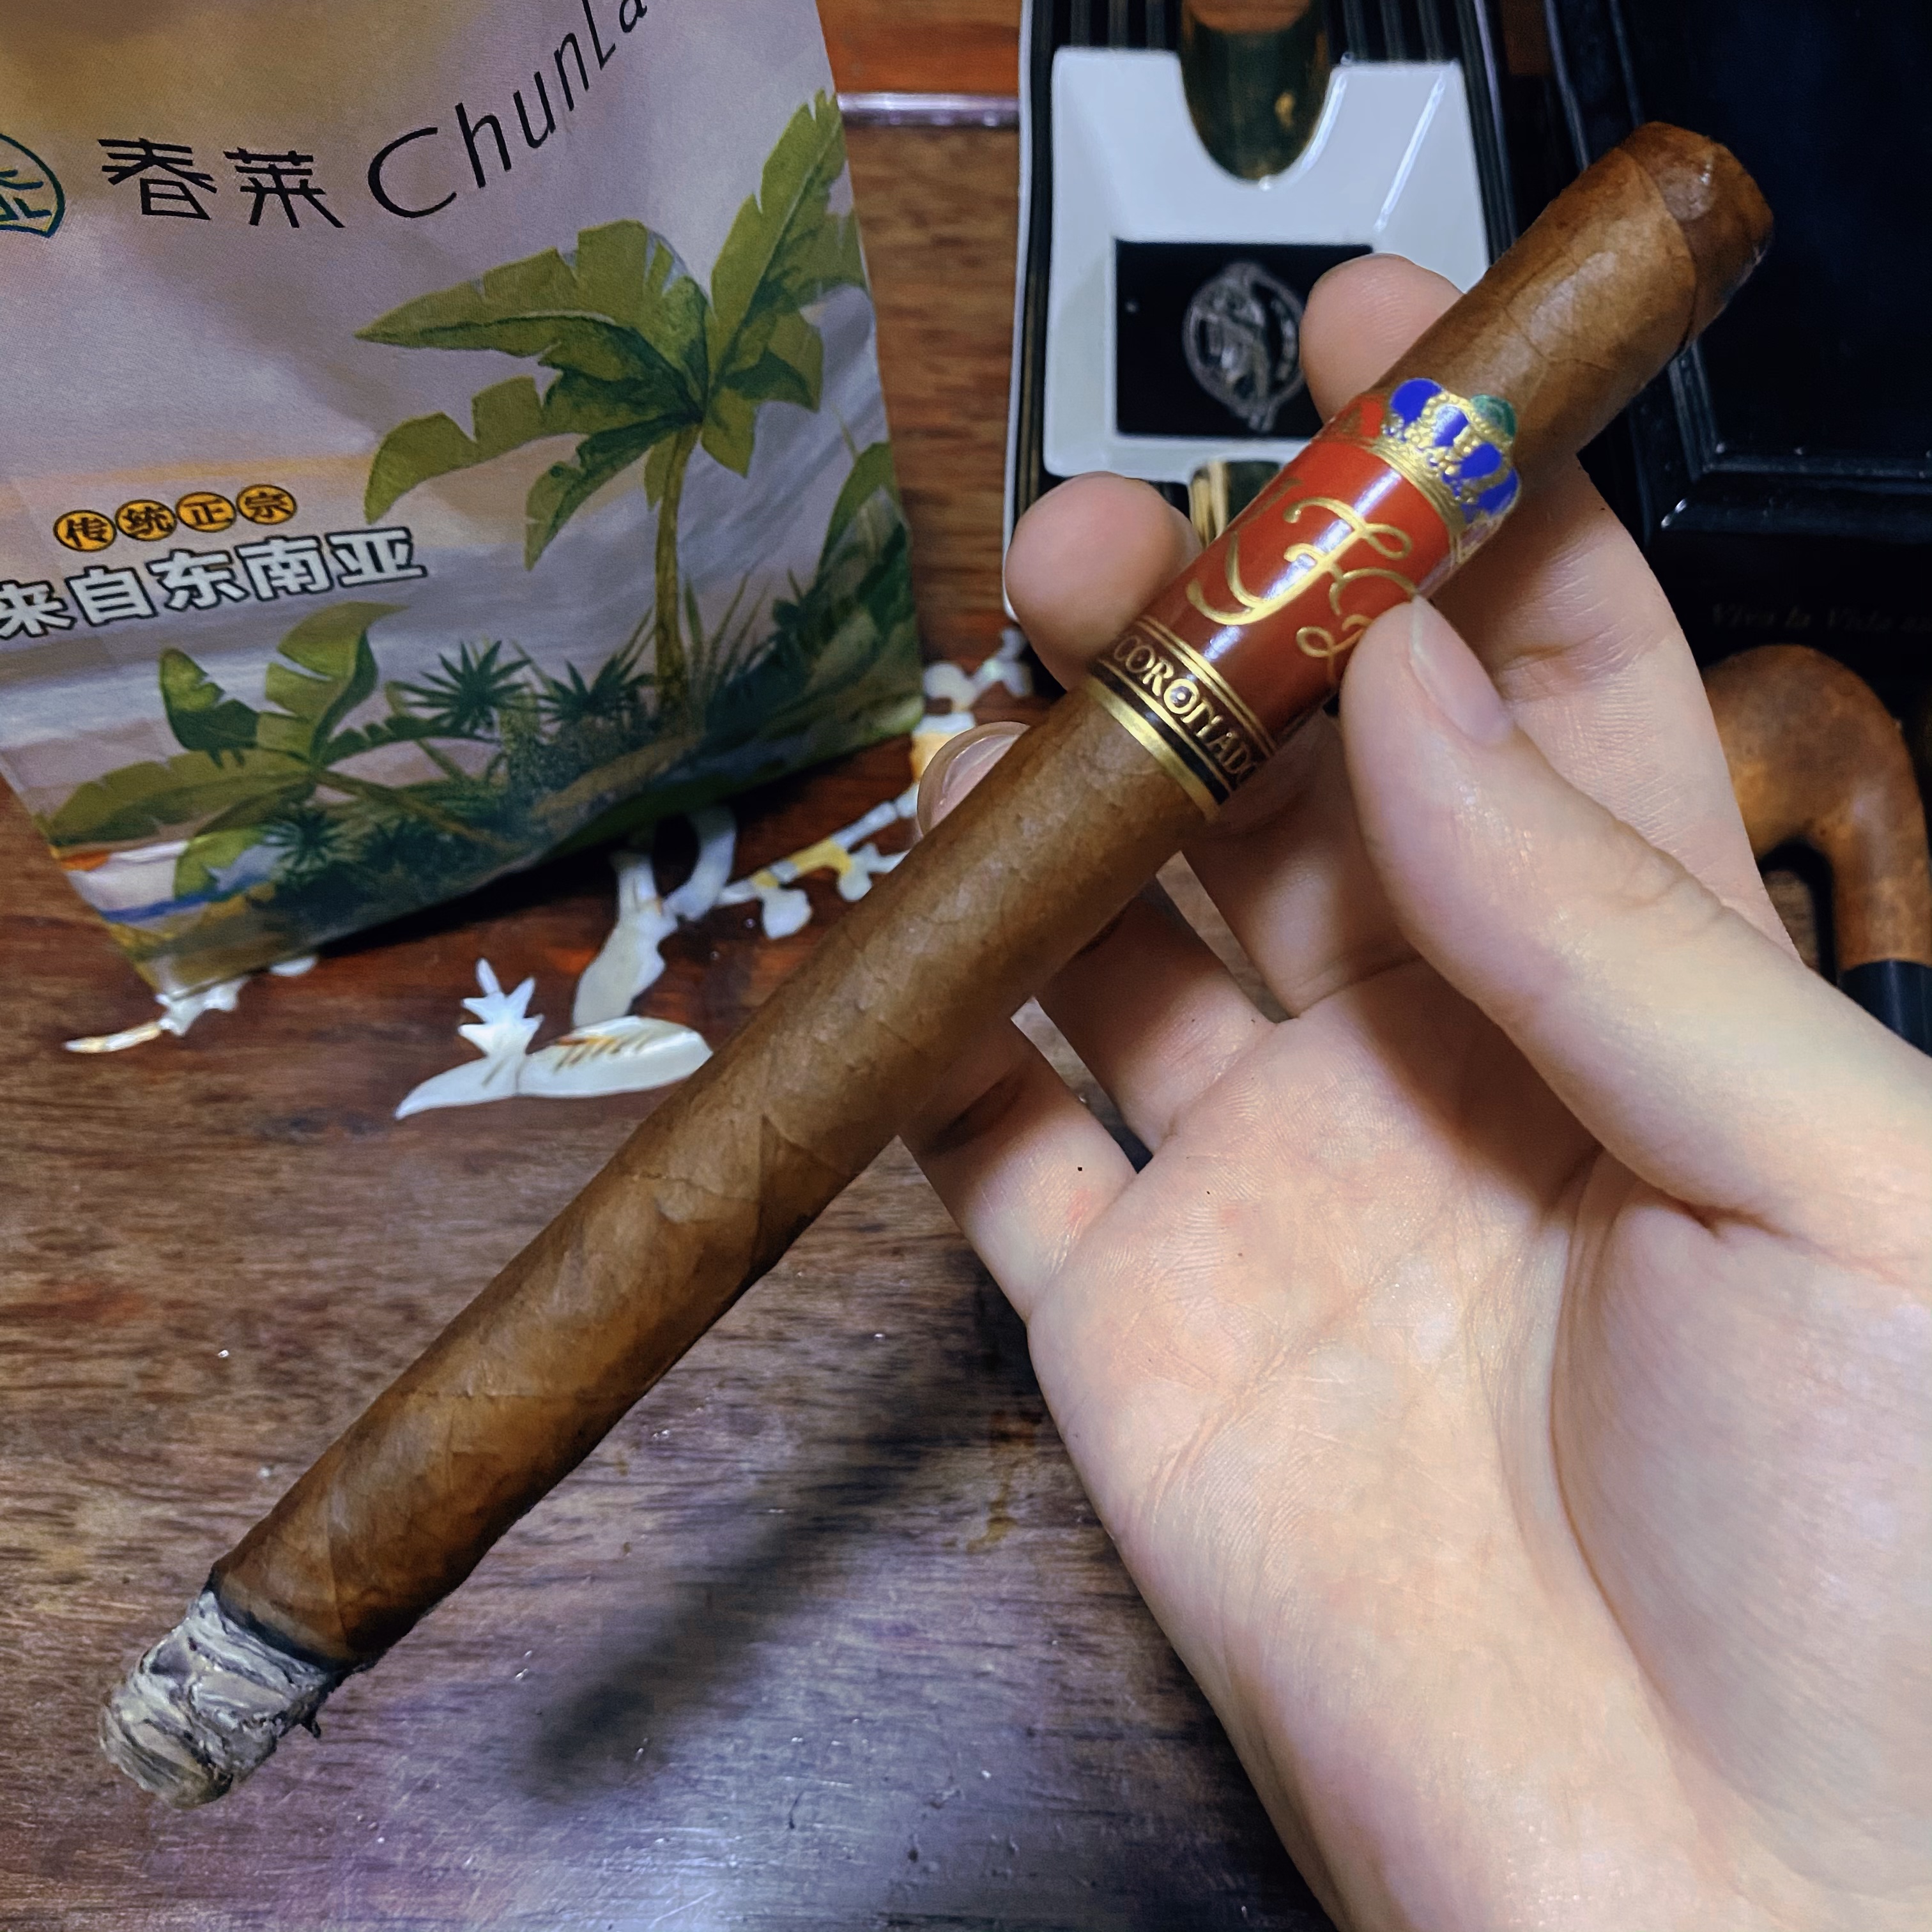 多米尼加之花“科罗娜多”雪茄品吸